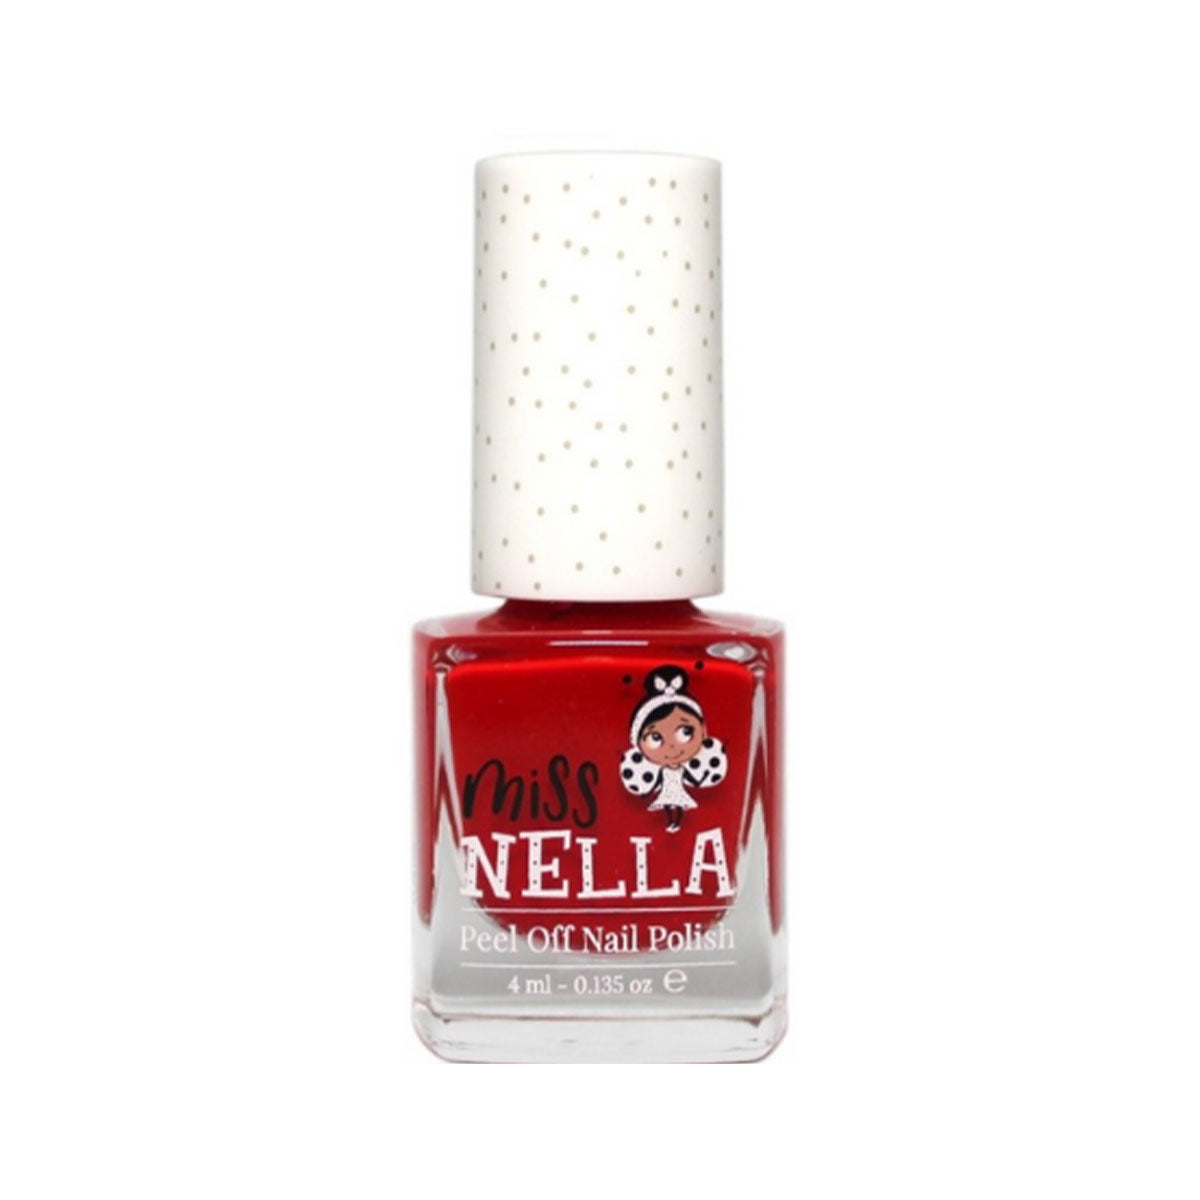 Laat de nageltjes van jouw kindje shinen met de nagellak strawberry and cream van het merk Miss Nella. De peel off nagellak is speciaal ontworpen voor kinderen en is vrij van chemicaliën. In verschillende kleuren. VanZus